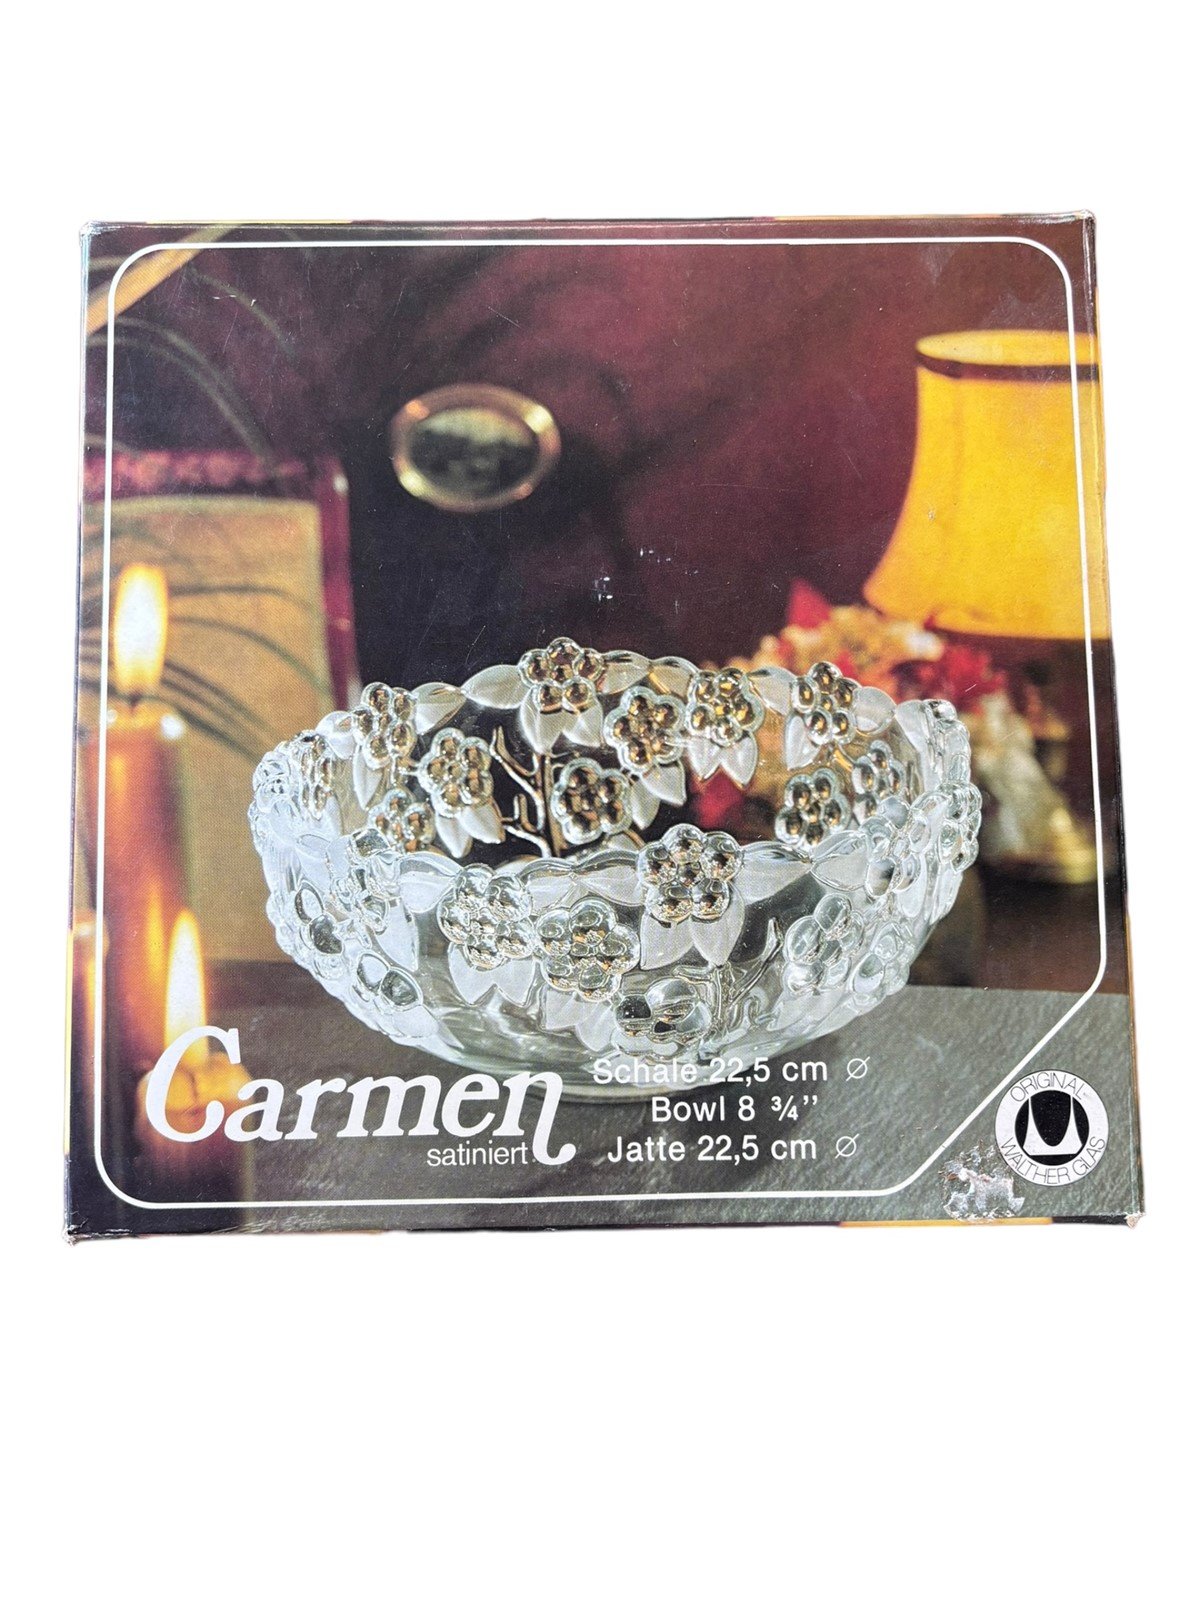 Carmen Satiniert Schale Floral Fruit Bowl 8 3/4 vintage